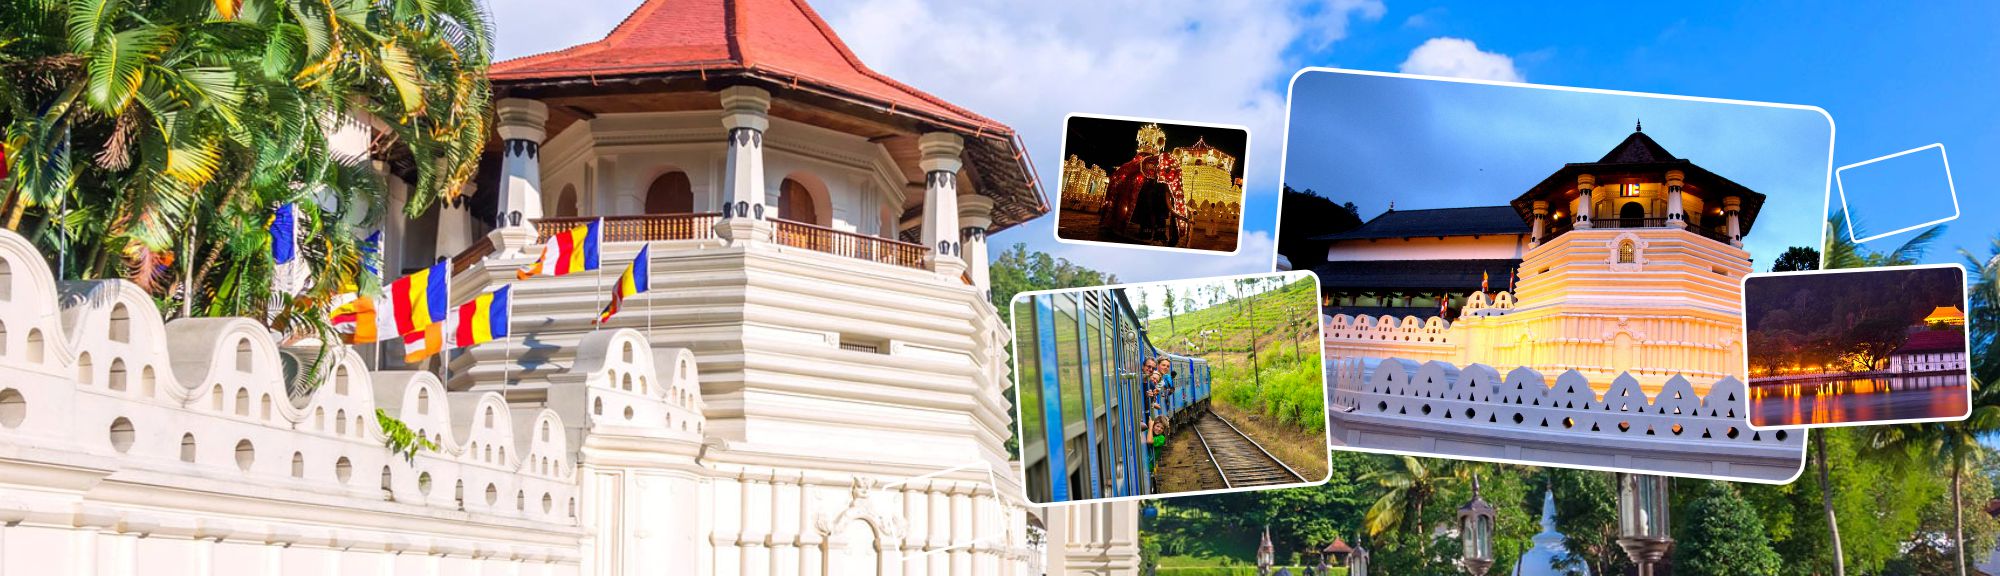 Kandy City Tour Package | walklankatours.com 